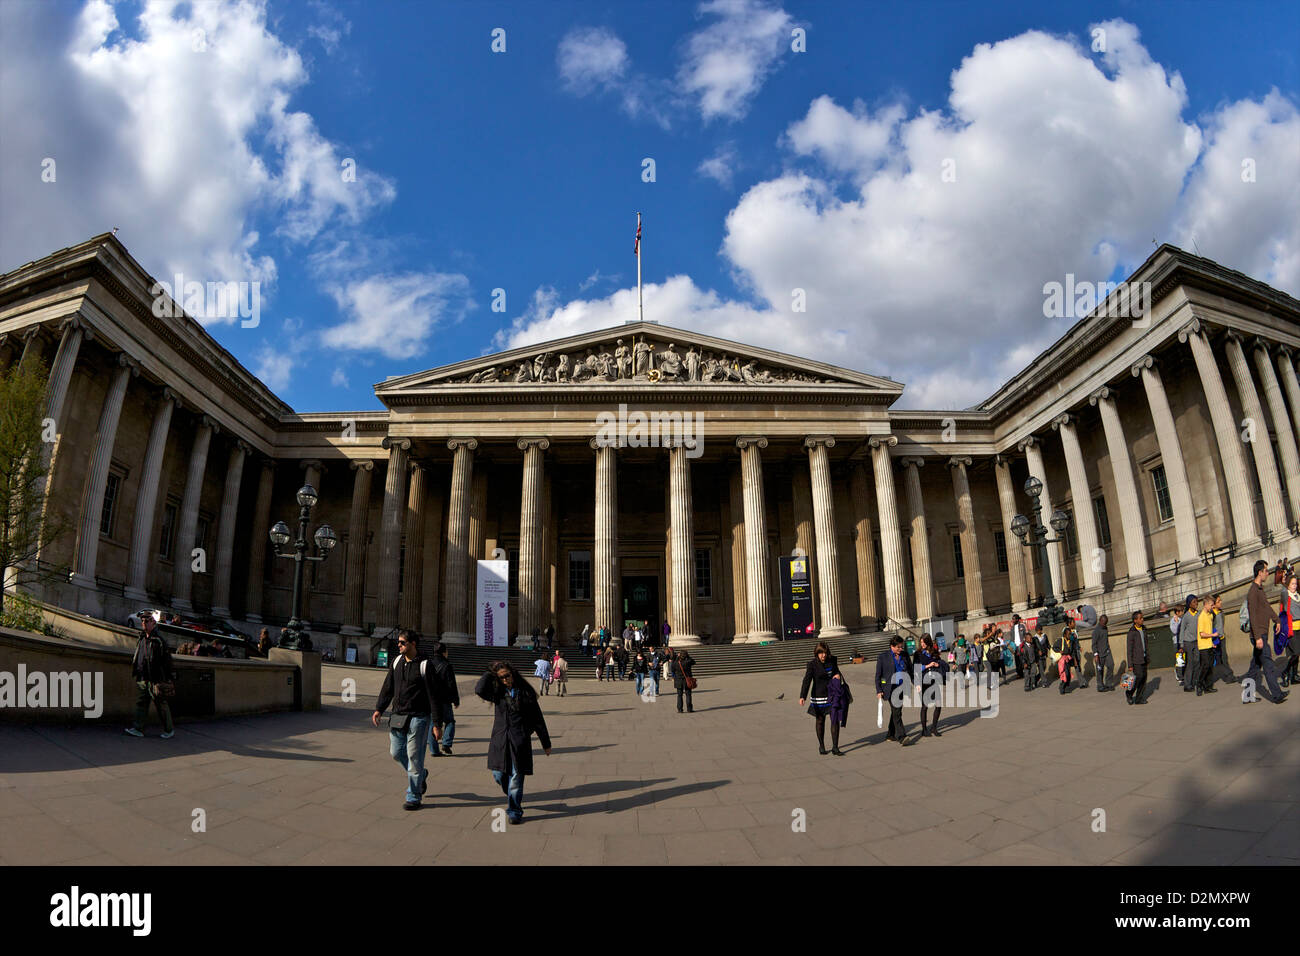 Una facciata classica del British Museum di Londra, Inghilterra, Regno Unito, GB, Isole britanniche Foto Stock